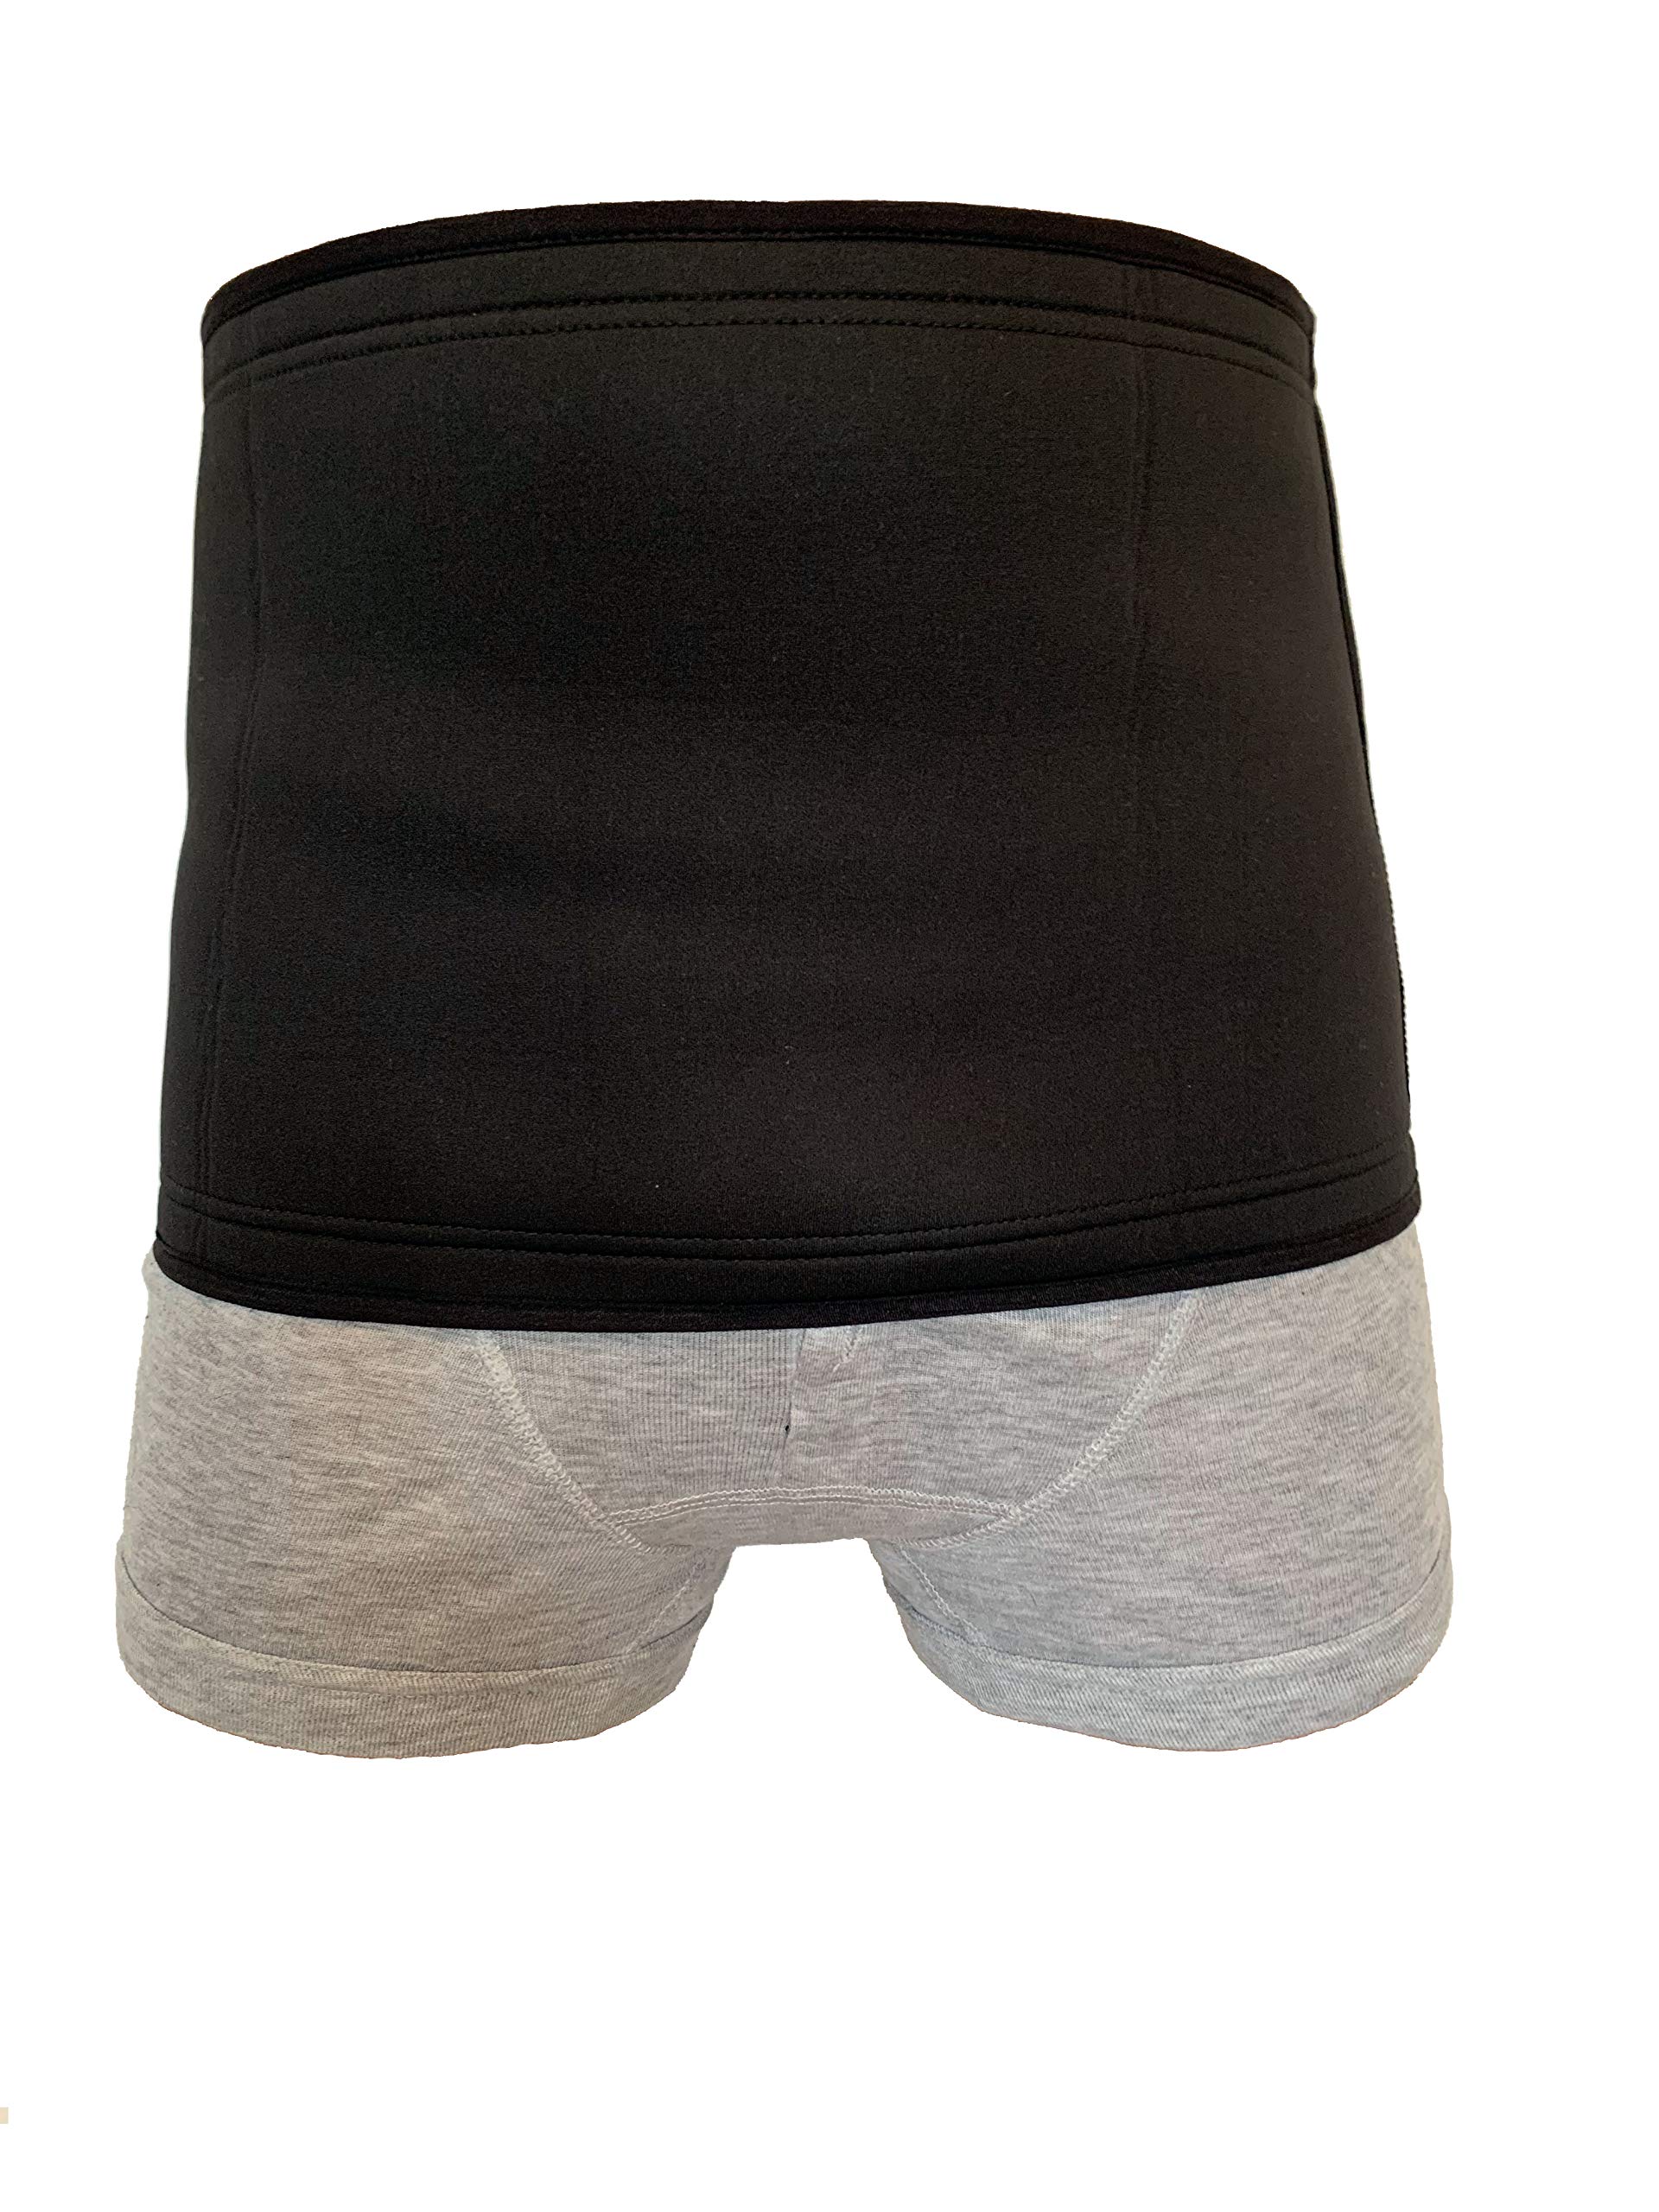 Weiche, erweiterbare Stoma-Bandage, Kolostomie-Bandage, Body Shaper Slimming Taillenmieder mit Silikon, 25 cm breit